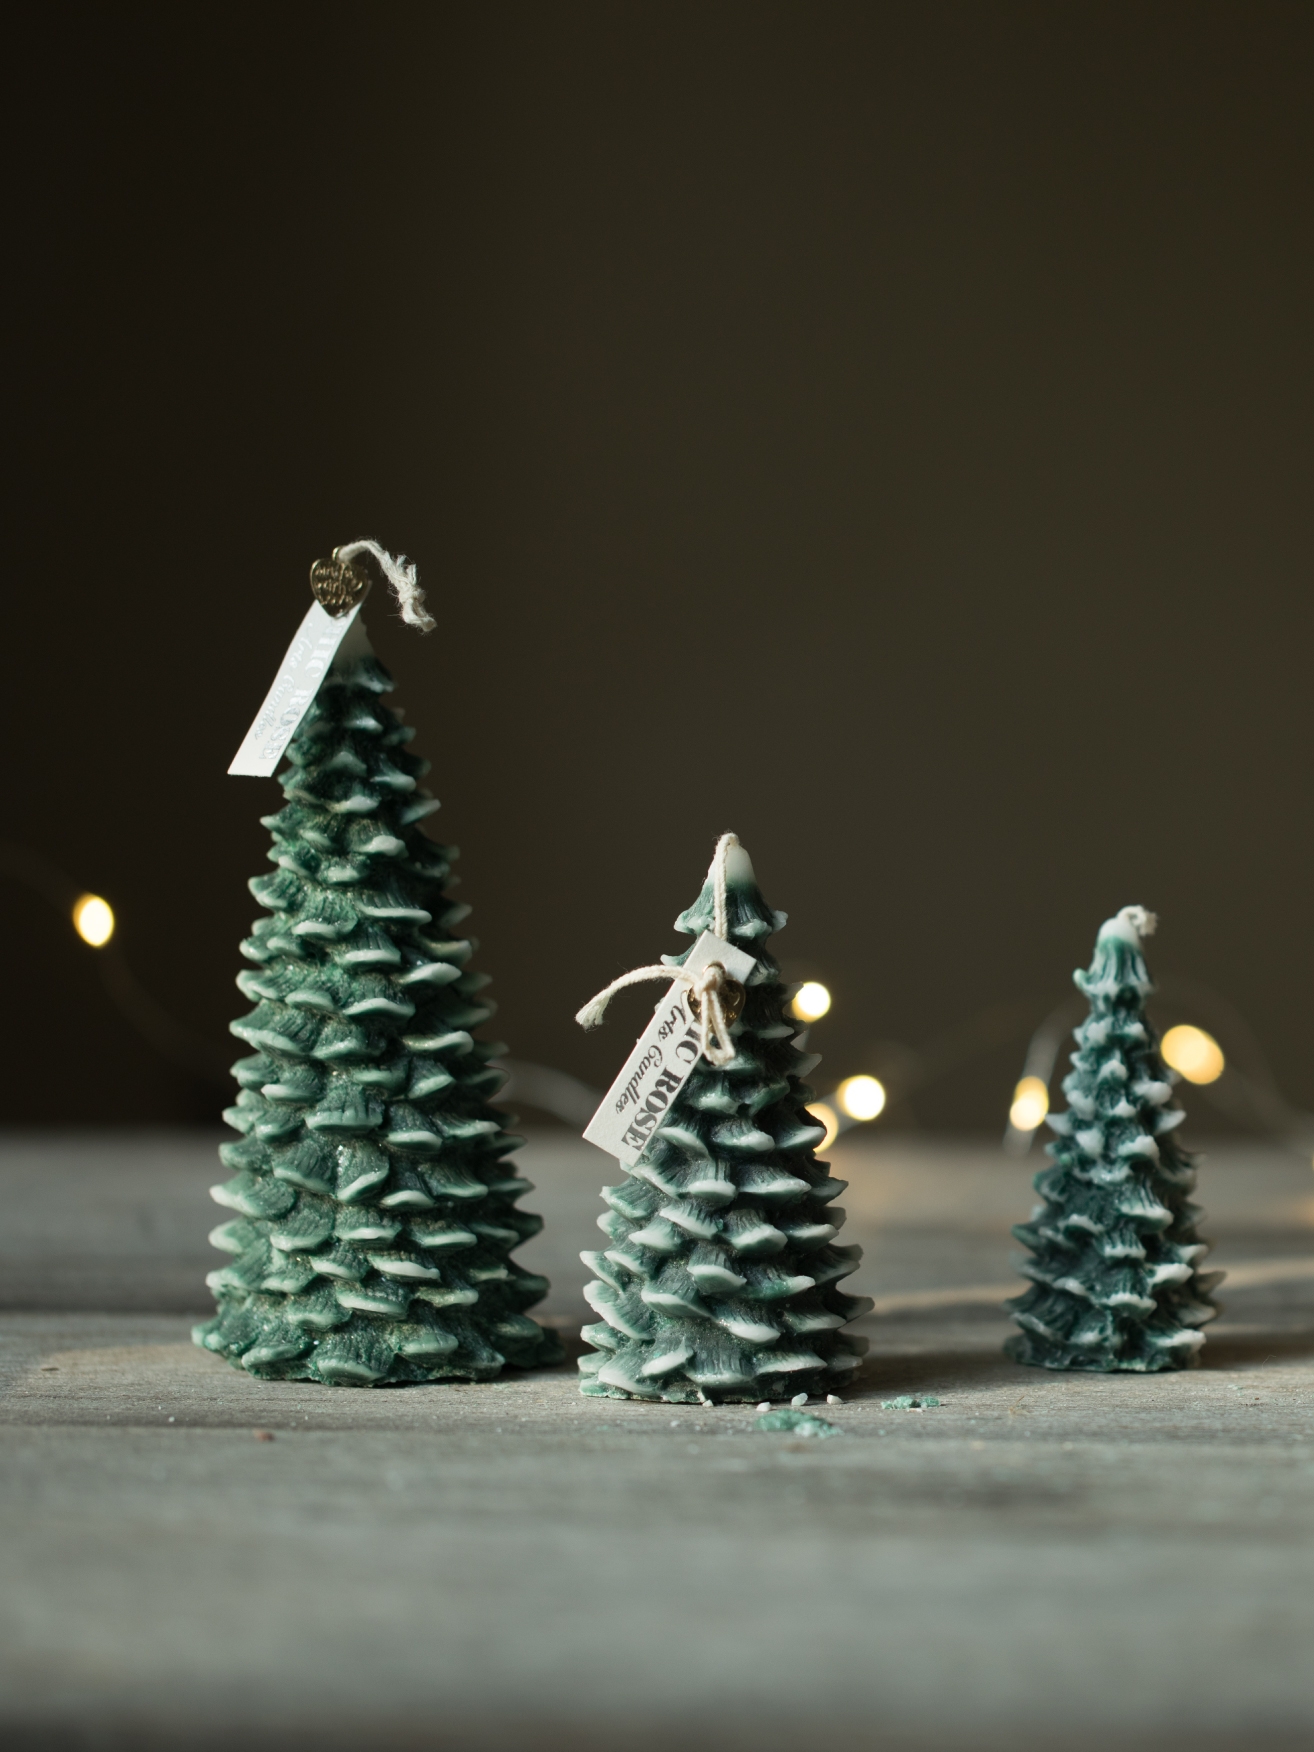 聖誕節聖誕樹造型香薰蠟燭節日燭臺裝飾禮品 (8.4折)